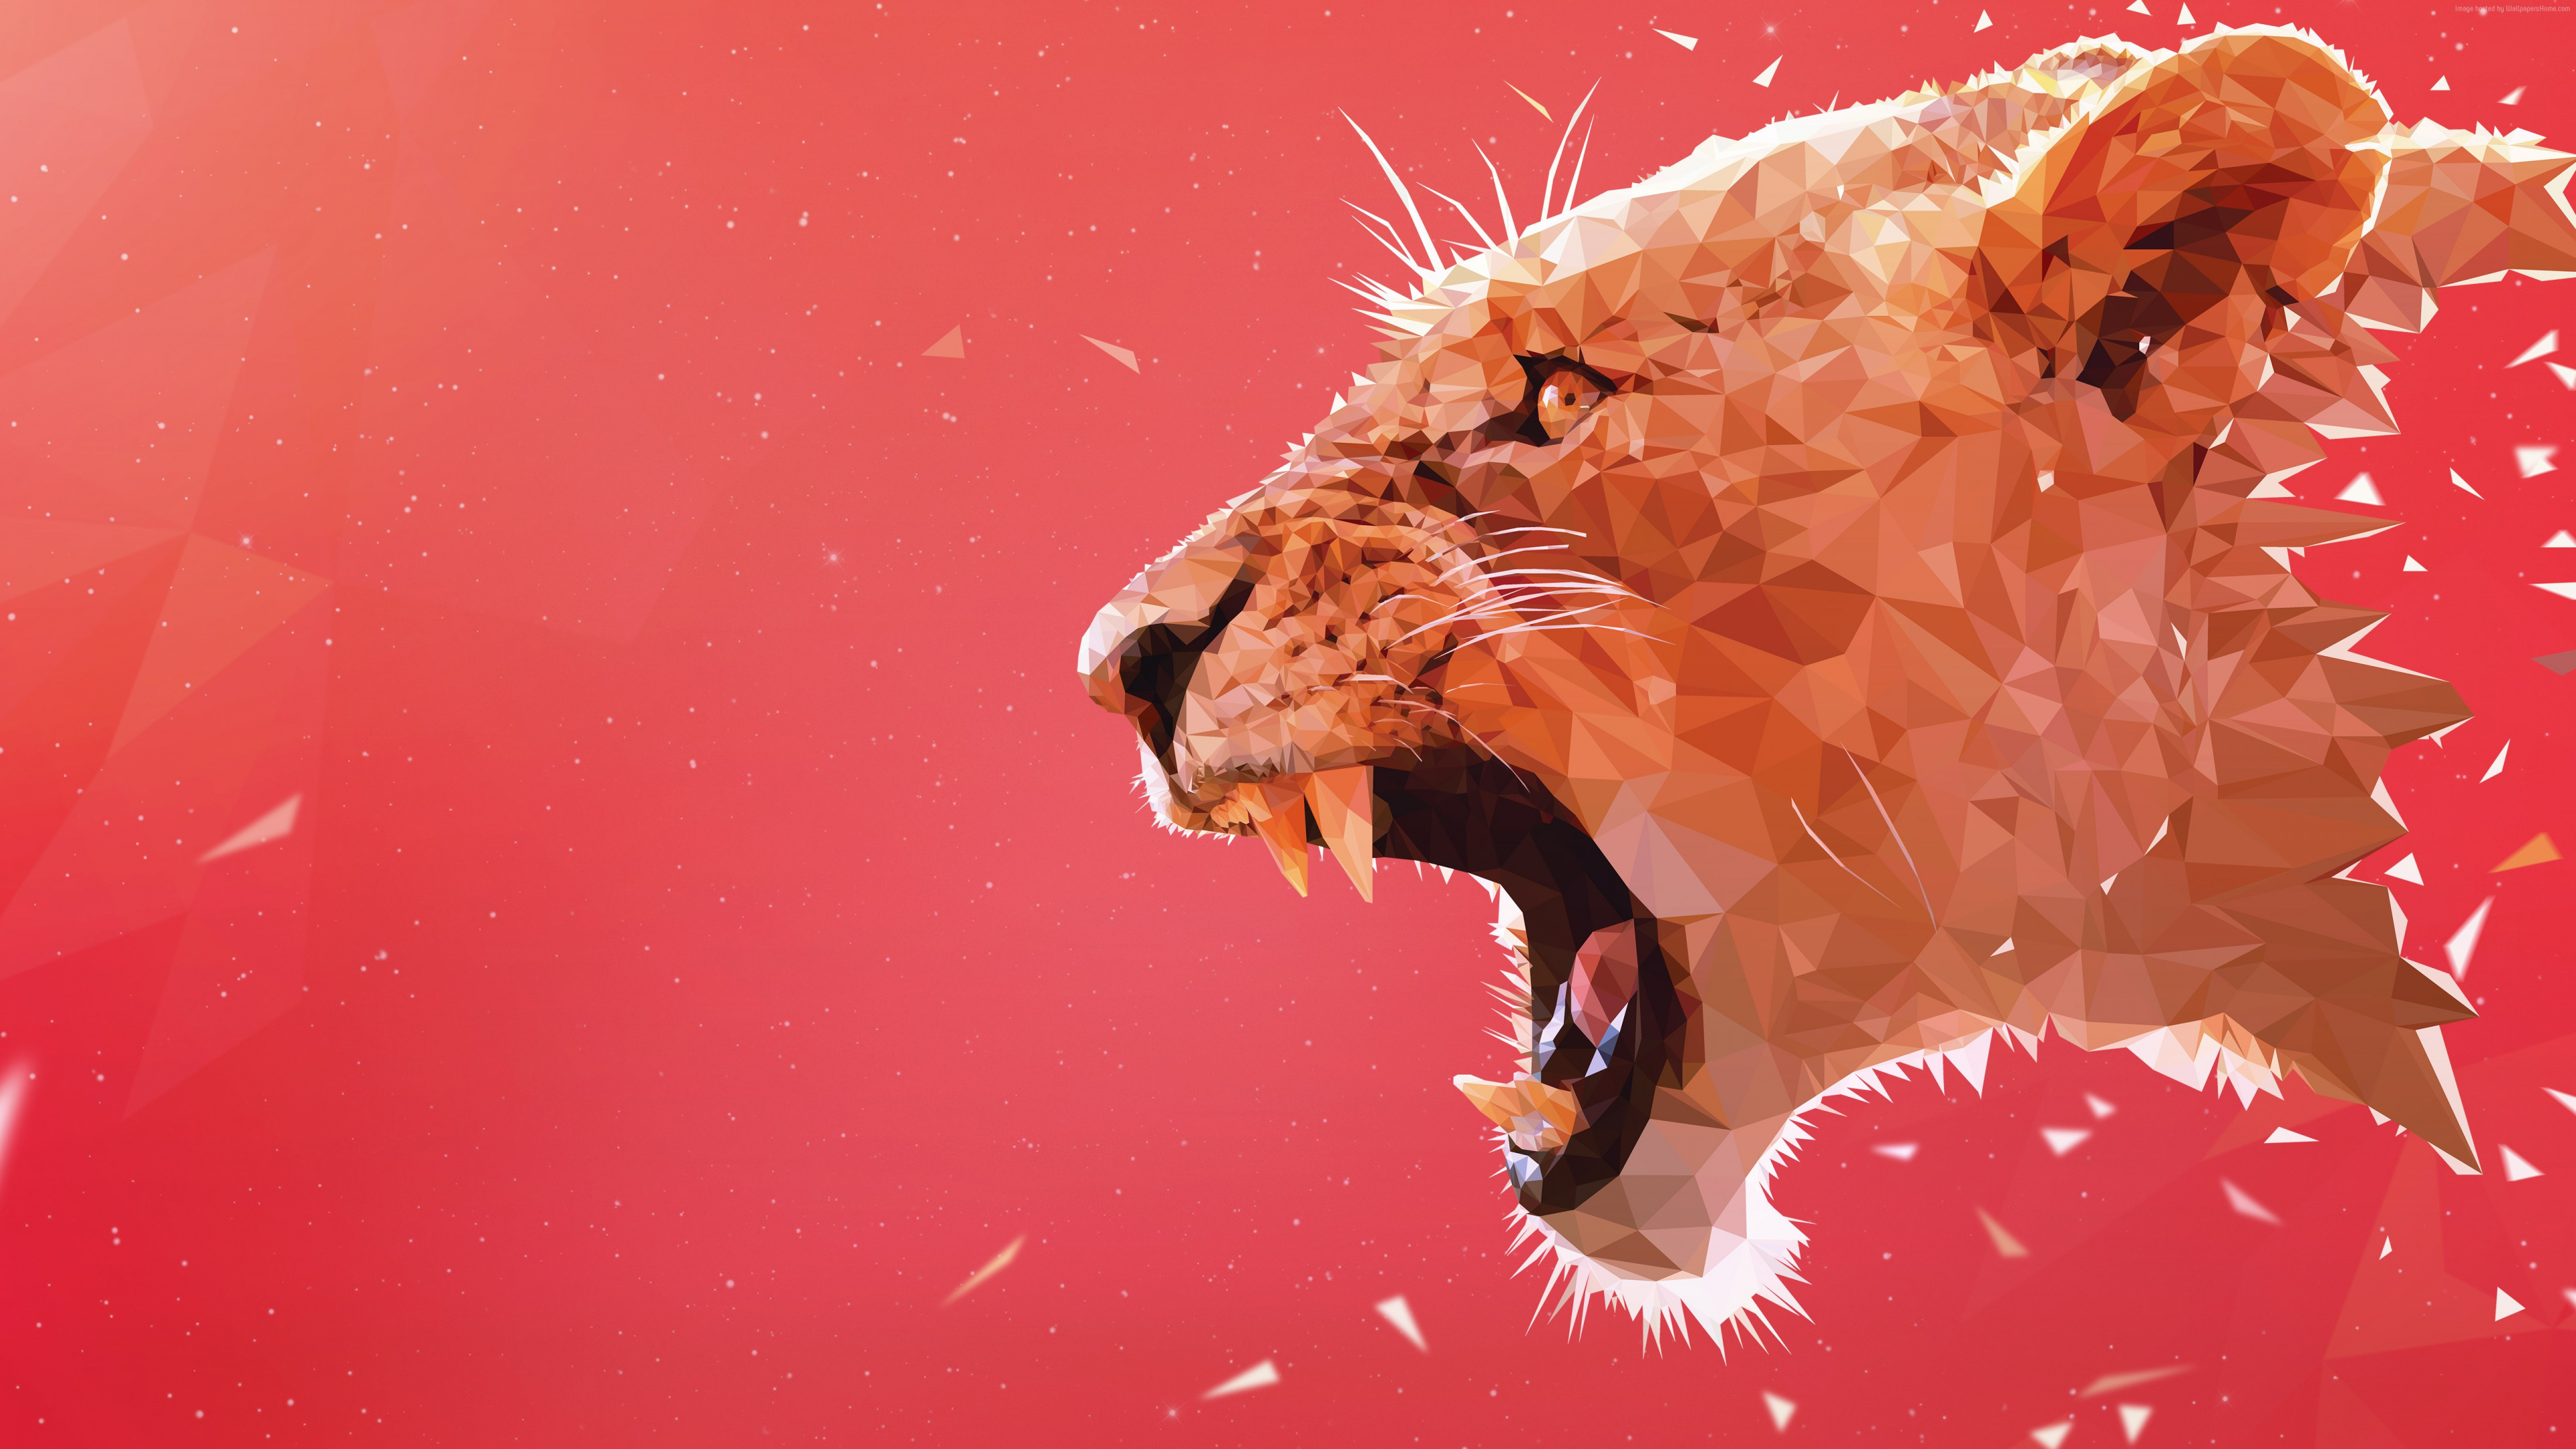 狮子, 食肉, 关闭了, 狮子吼, 红色的 壁纸 3840x2160 允许